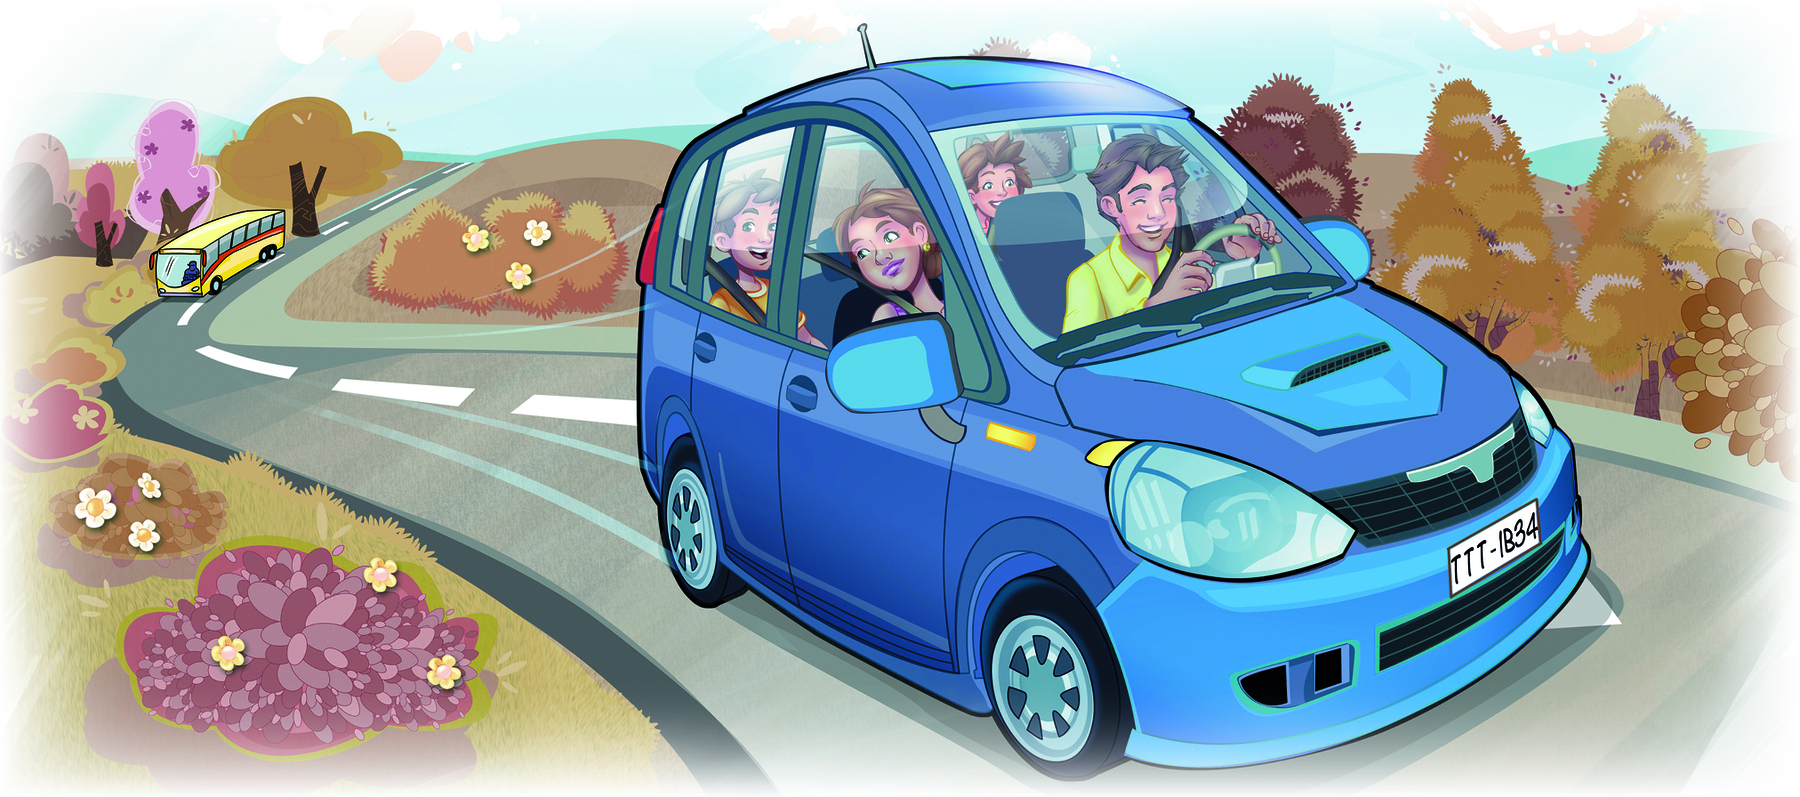 Ilustração. Quatro pessoas dentro de um automóvel azul em uma estrada. Ao redor, vegetação e arbustos.